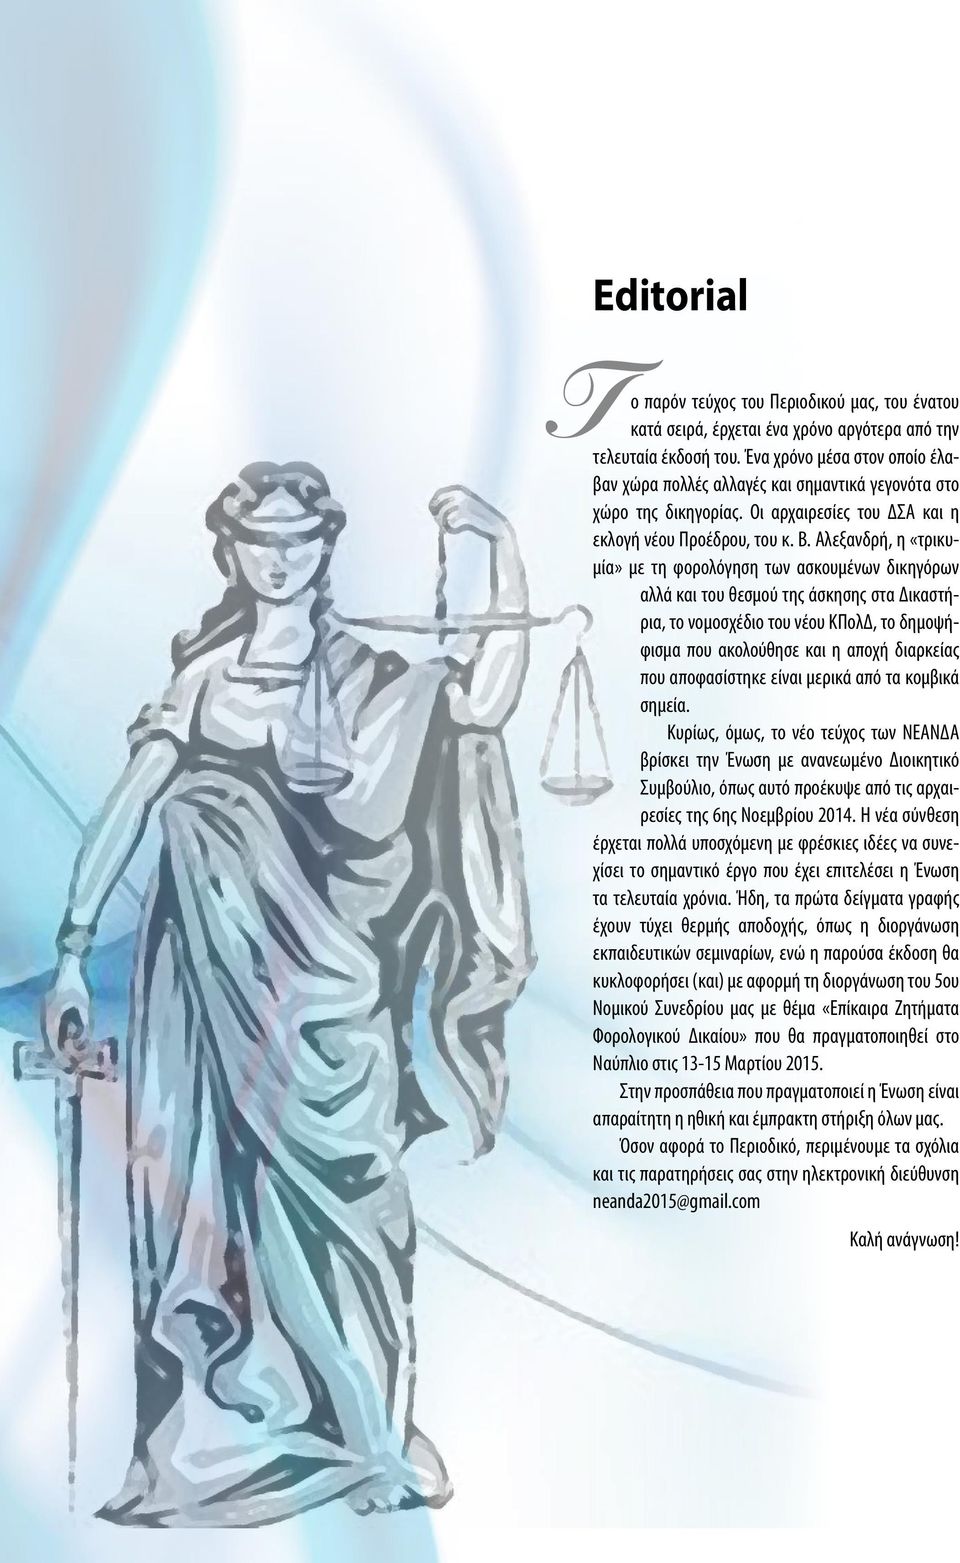 Αλεξανδρή, η «τρικυμία» με τη φορολόγηση των ασκουμένων δικηγόρων αλλά και του θεσμού της άσκησης στα Δικαστήρια, το νομοσχέδιο του νέου ΚΠολΔ, το δημοψήφισμα που ακολούθησε και η αποχή διαρκείας που